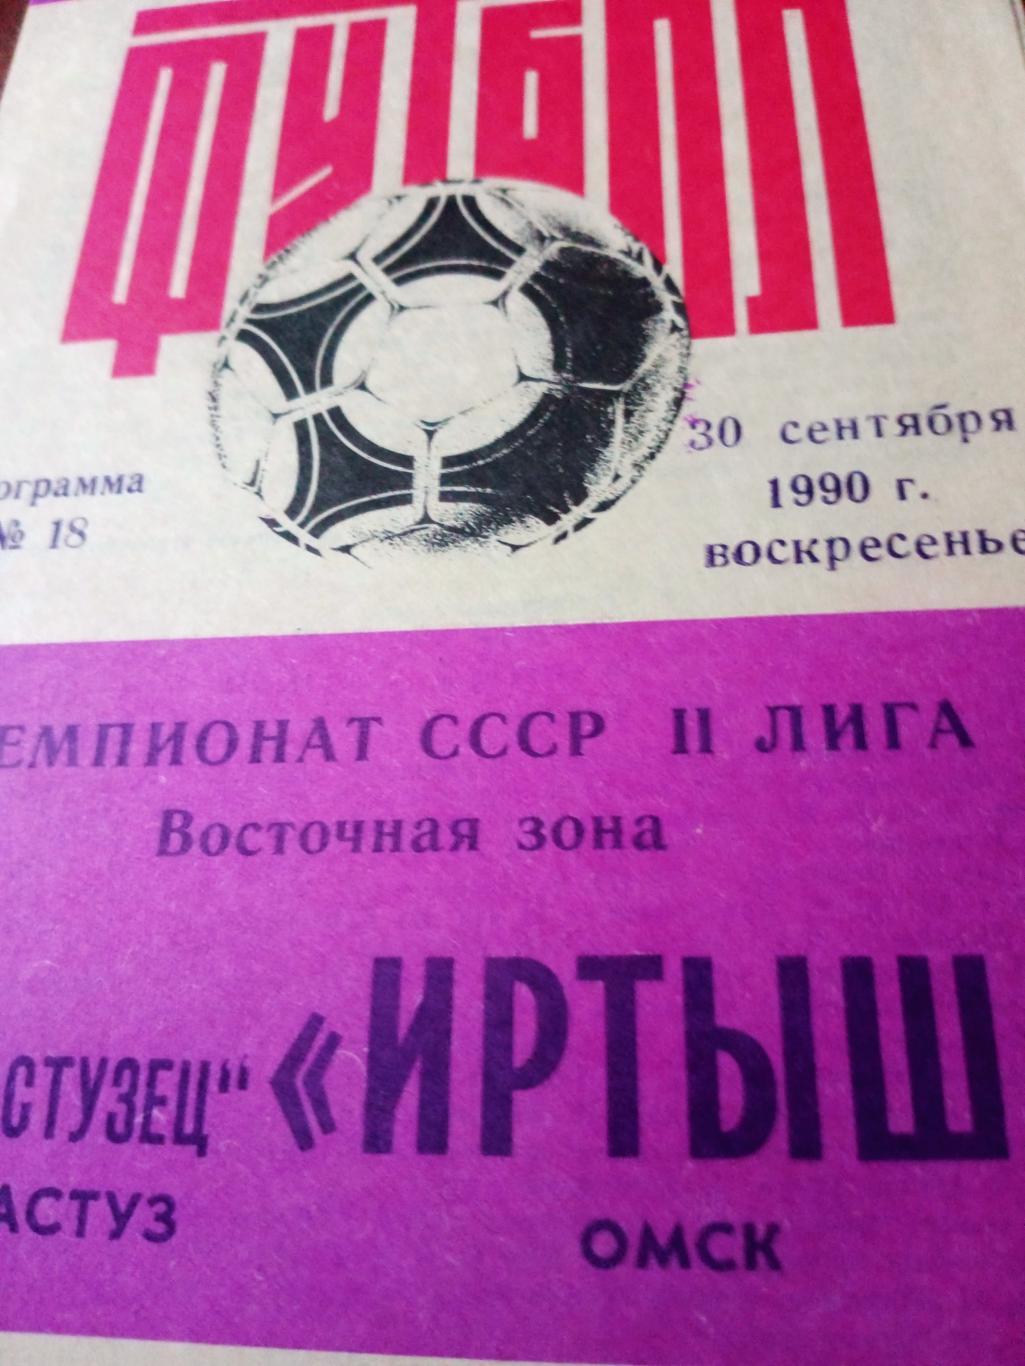 Иртыш Омск - Экибастузец Экибастуз. 30 сентября 1990 год